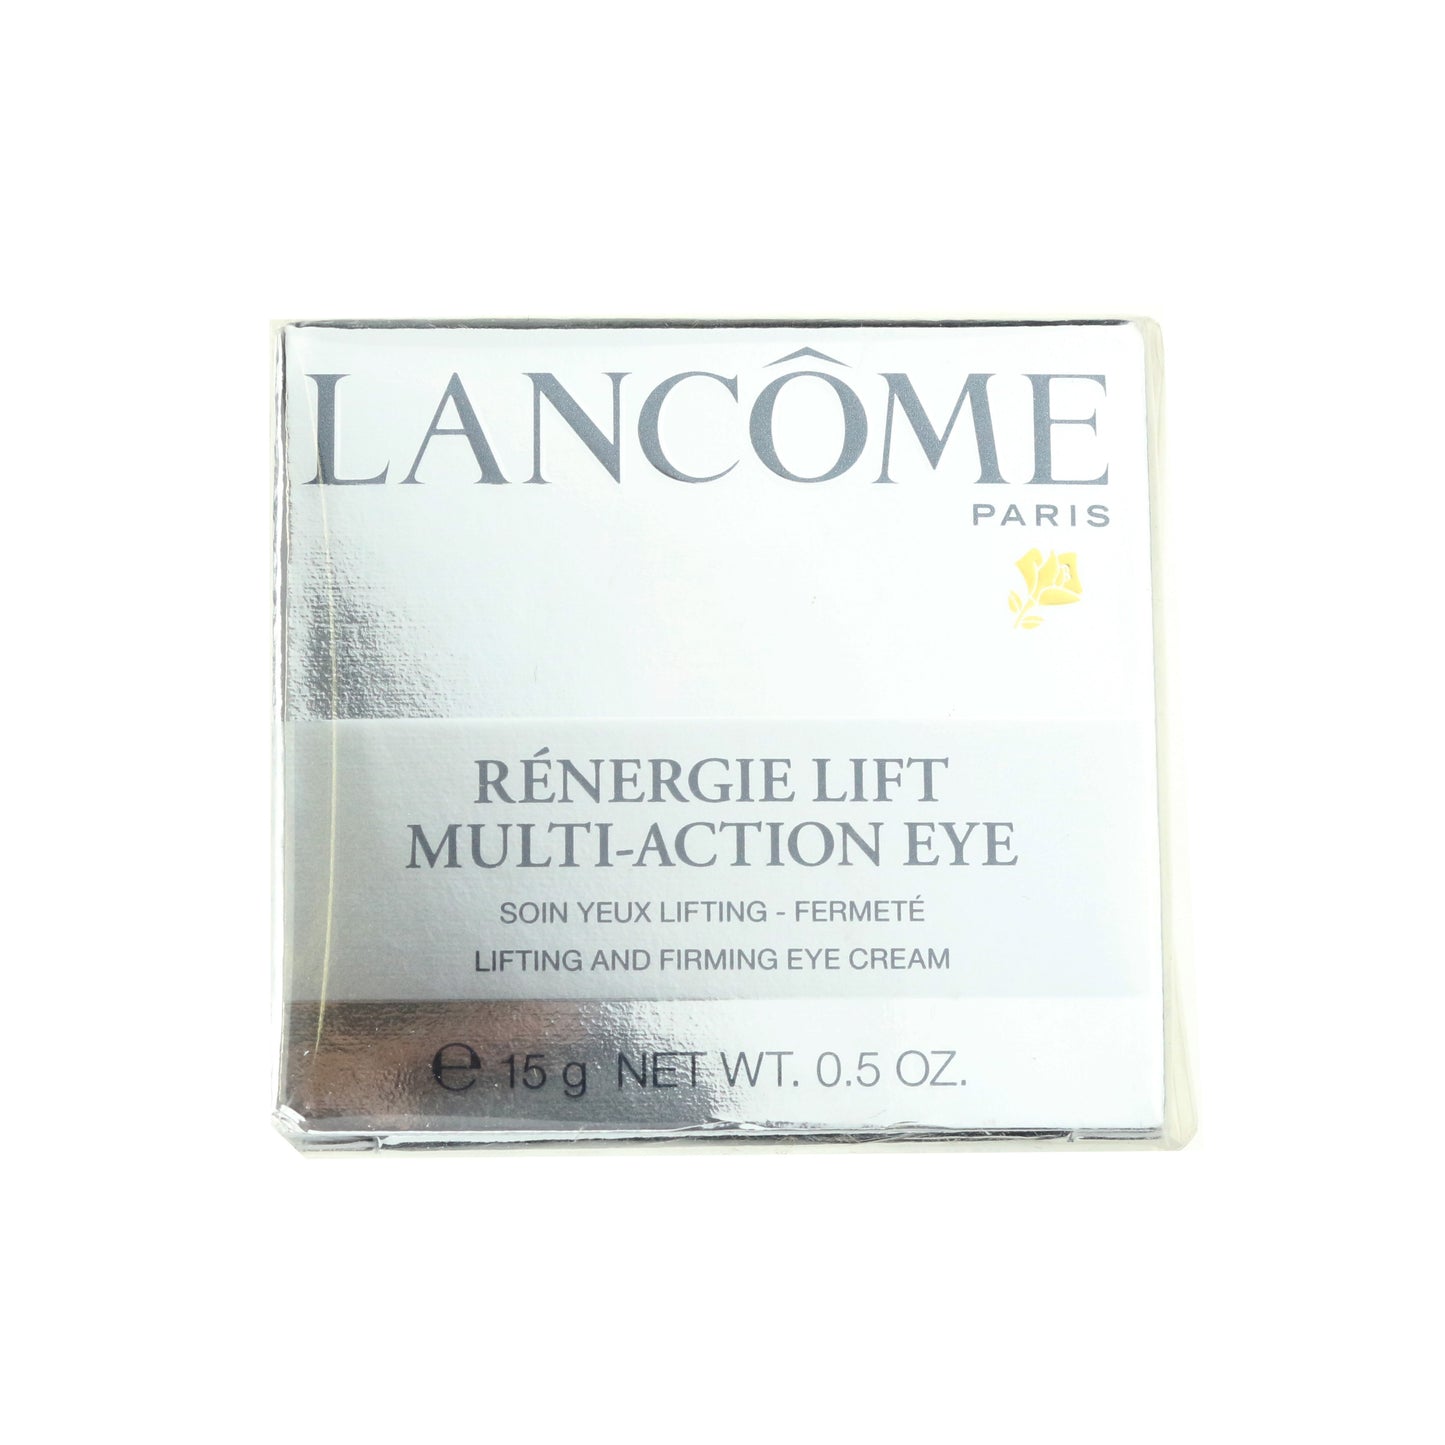 Renergie Lift Multi-Action Eye Firming Eye Cream .5oz